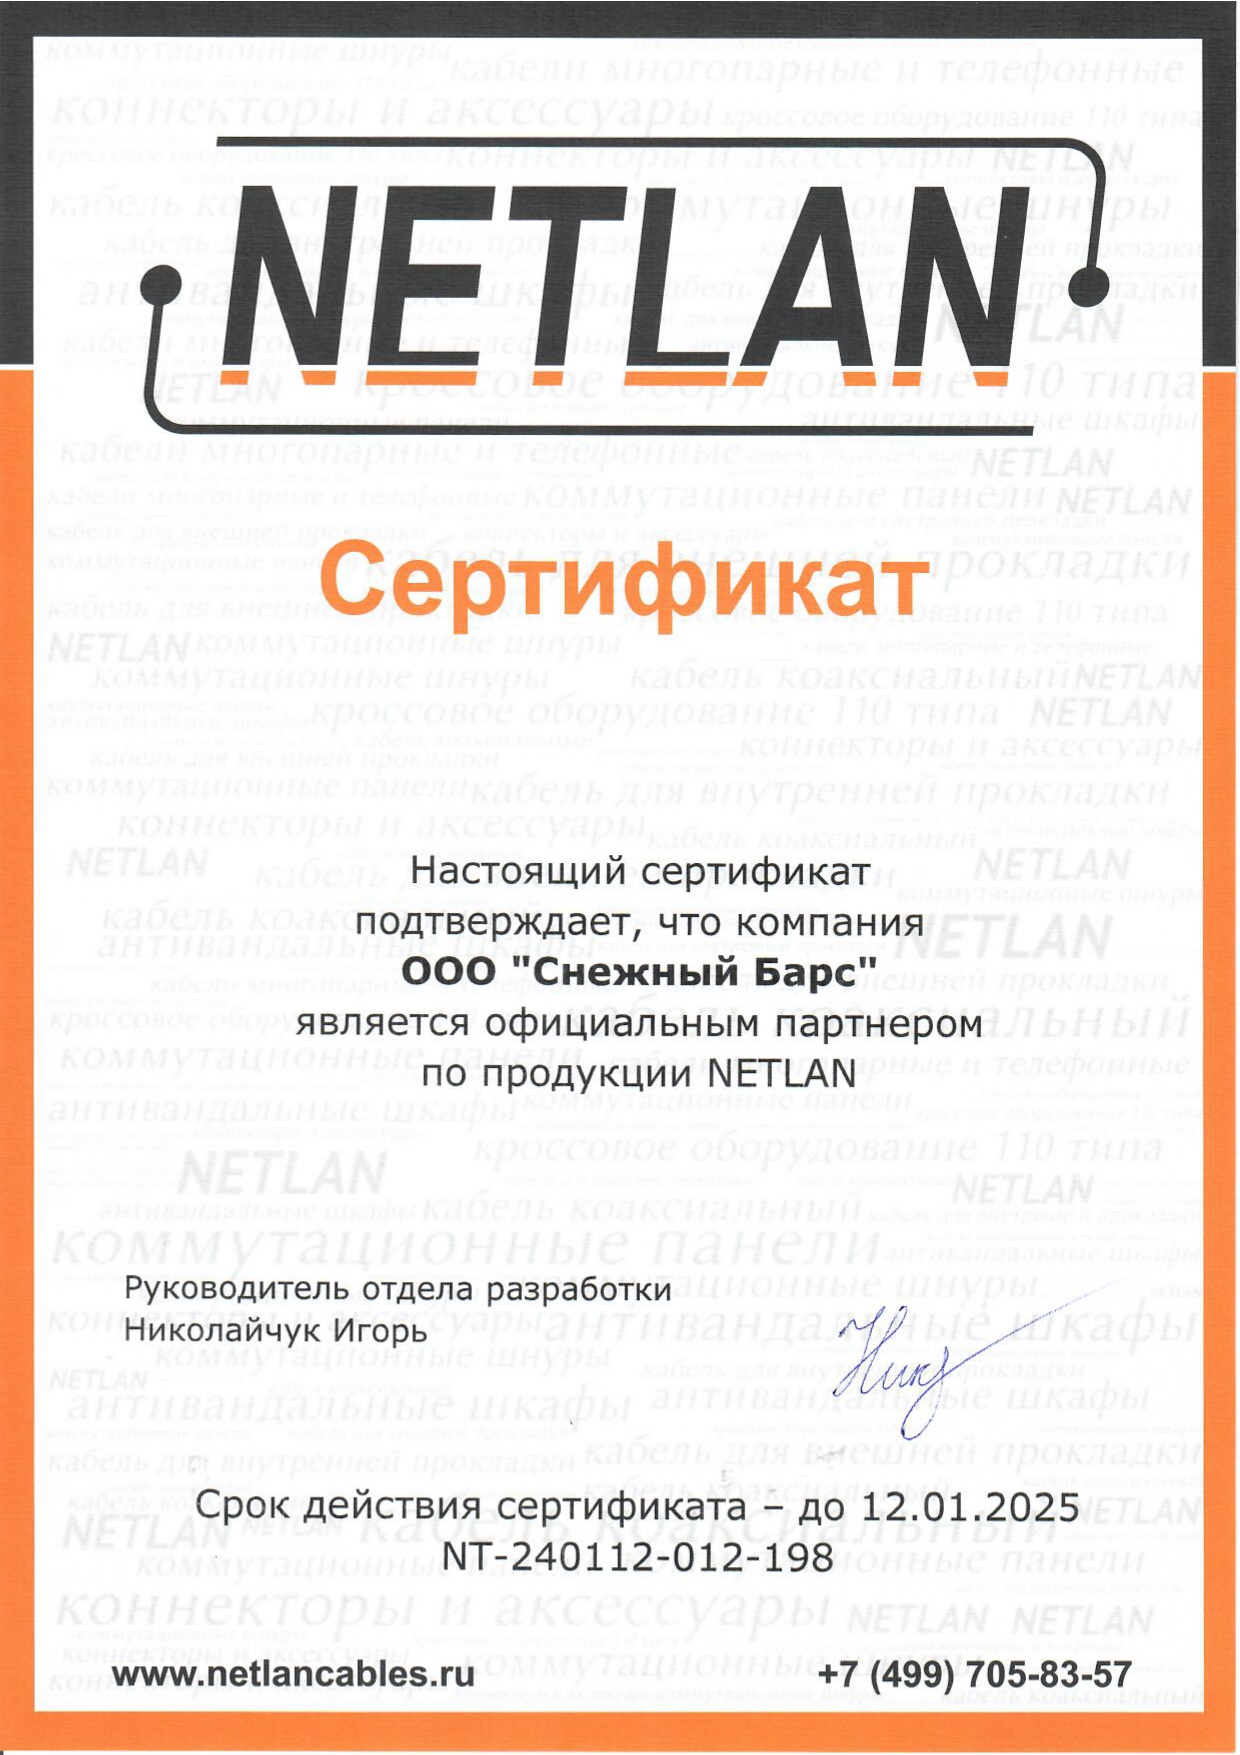 Сертификат официального партнера по продукции Netlan